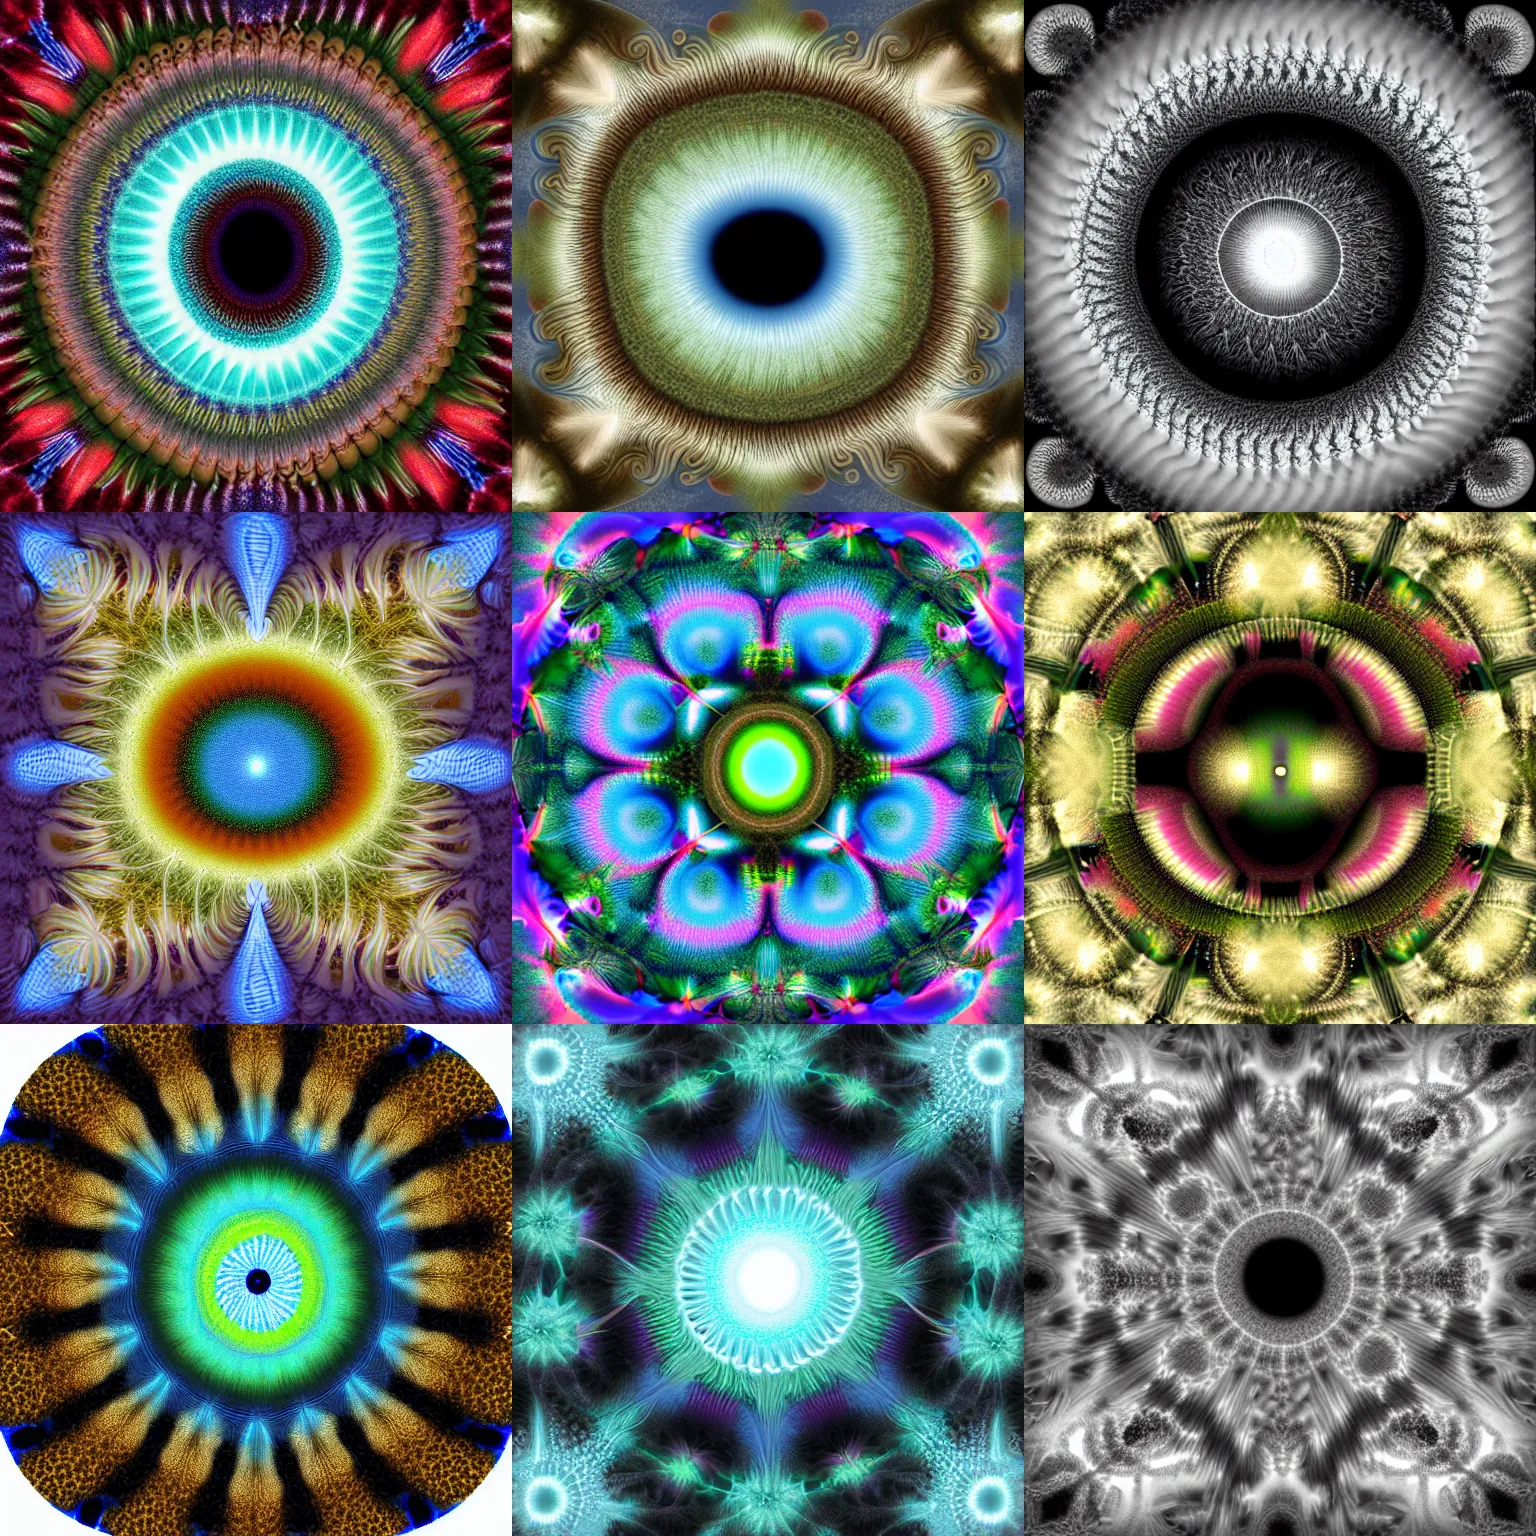 Prompt: Julia fractal, eye